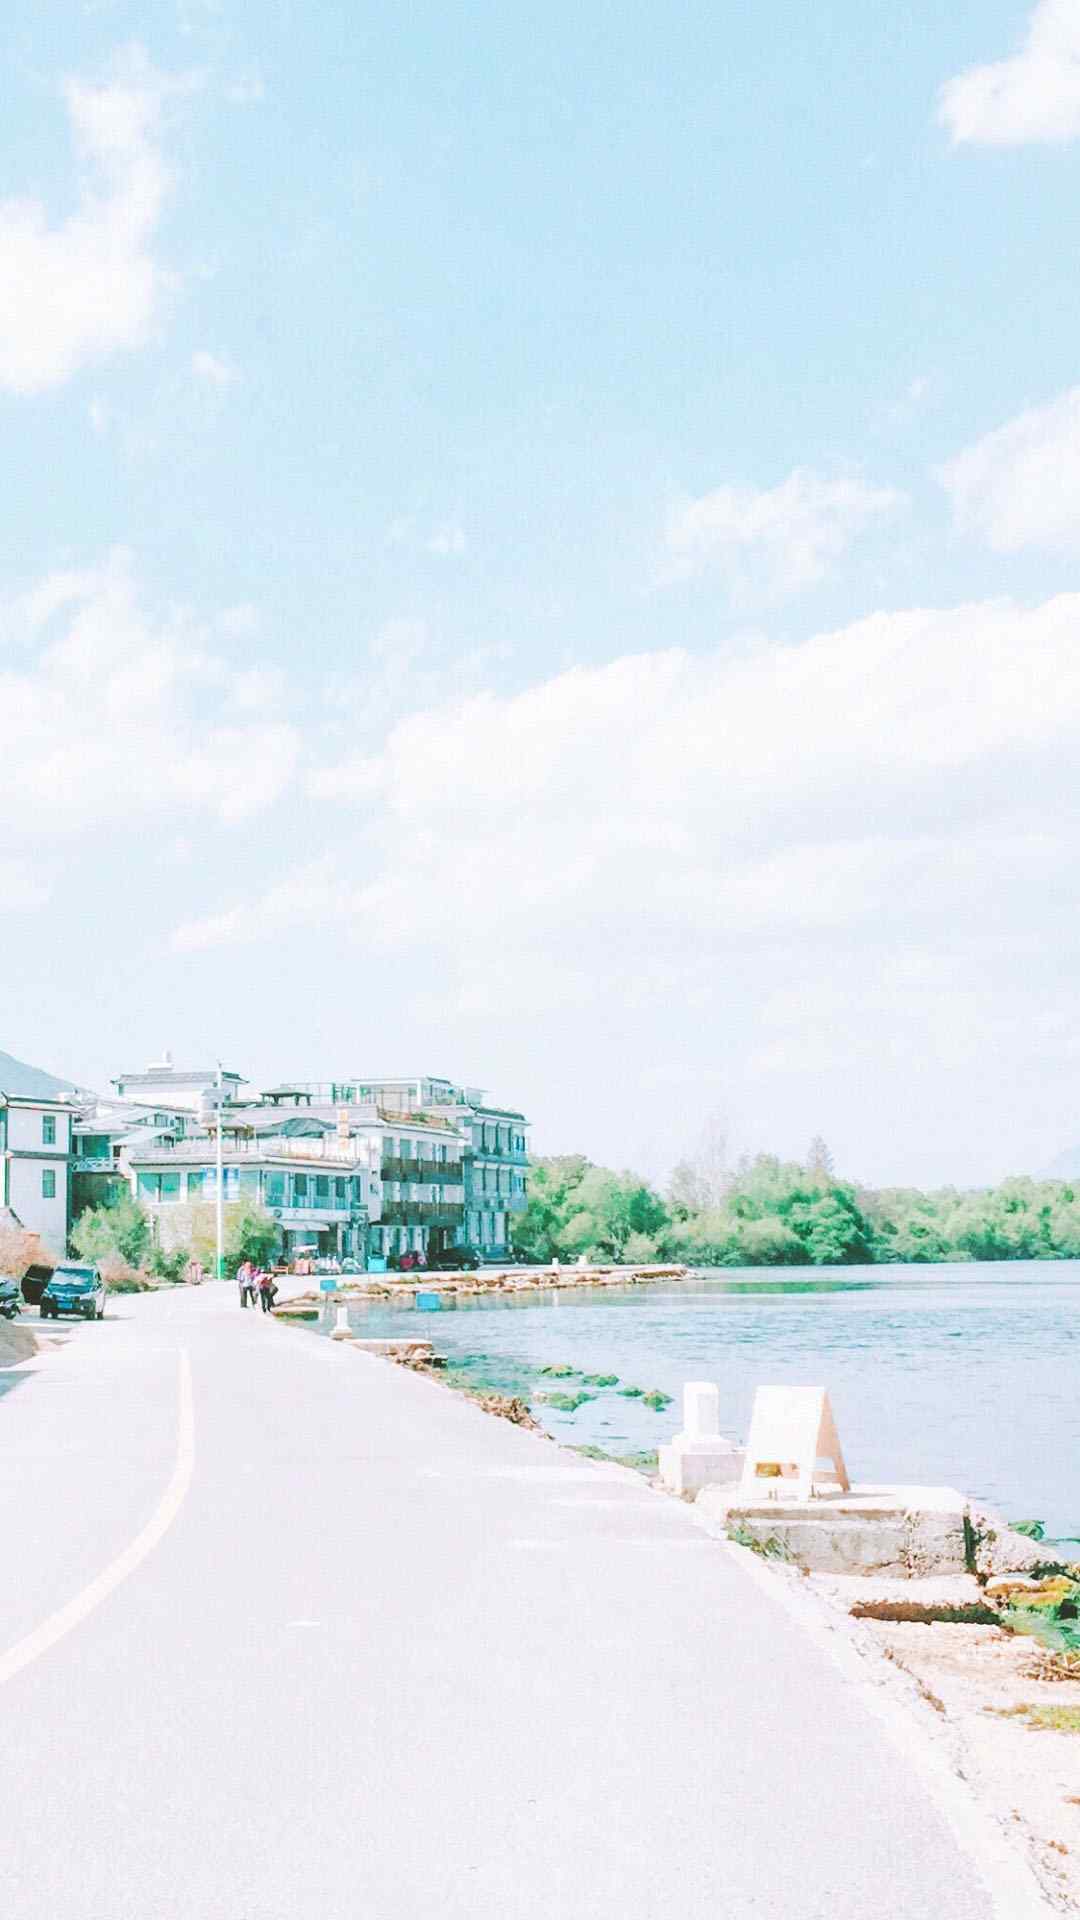 夏日海岛风情唯美风景图片高清手机壁纸